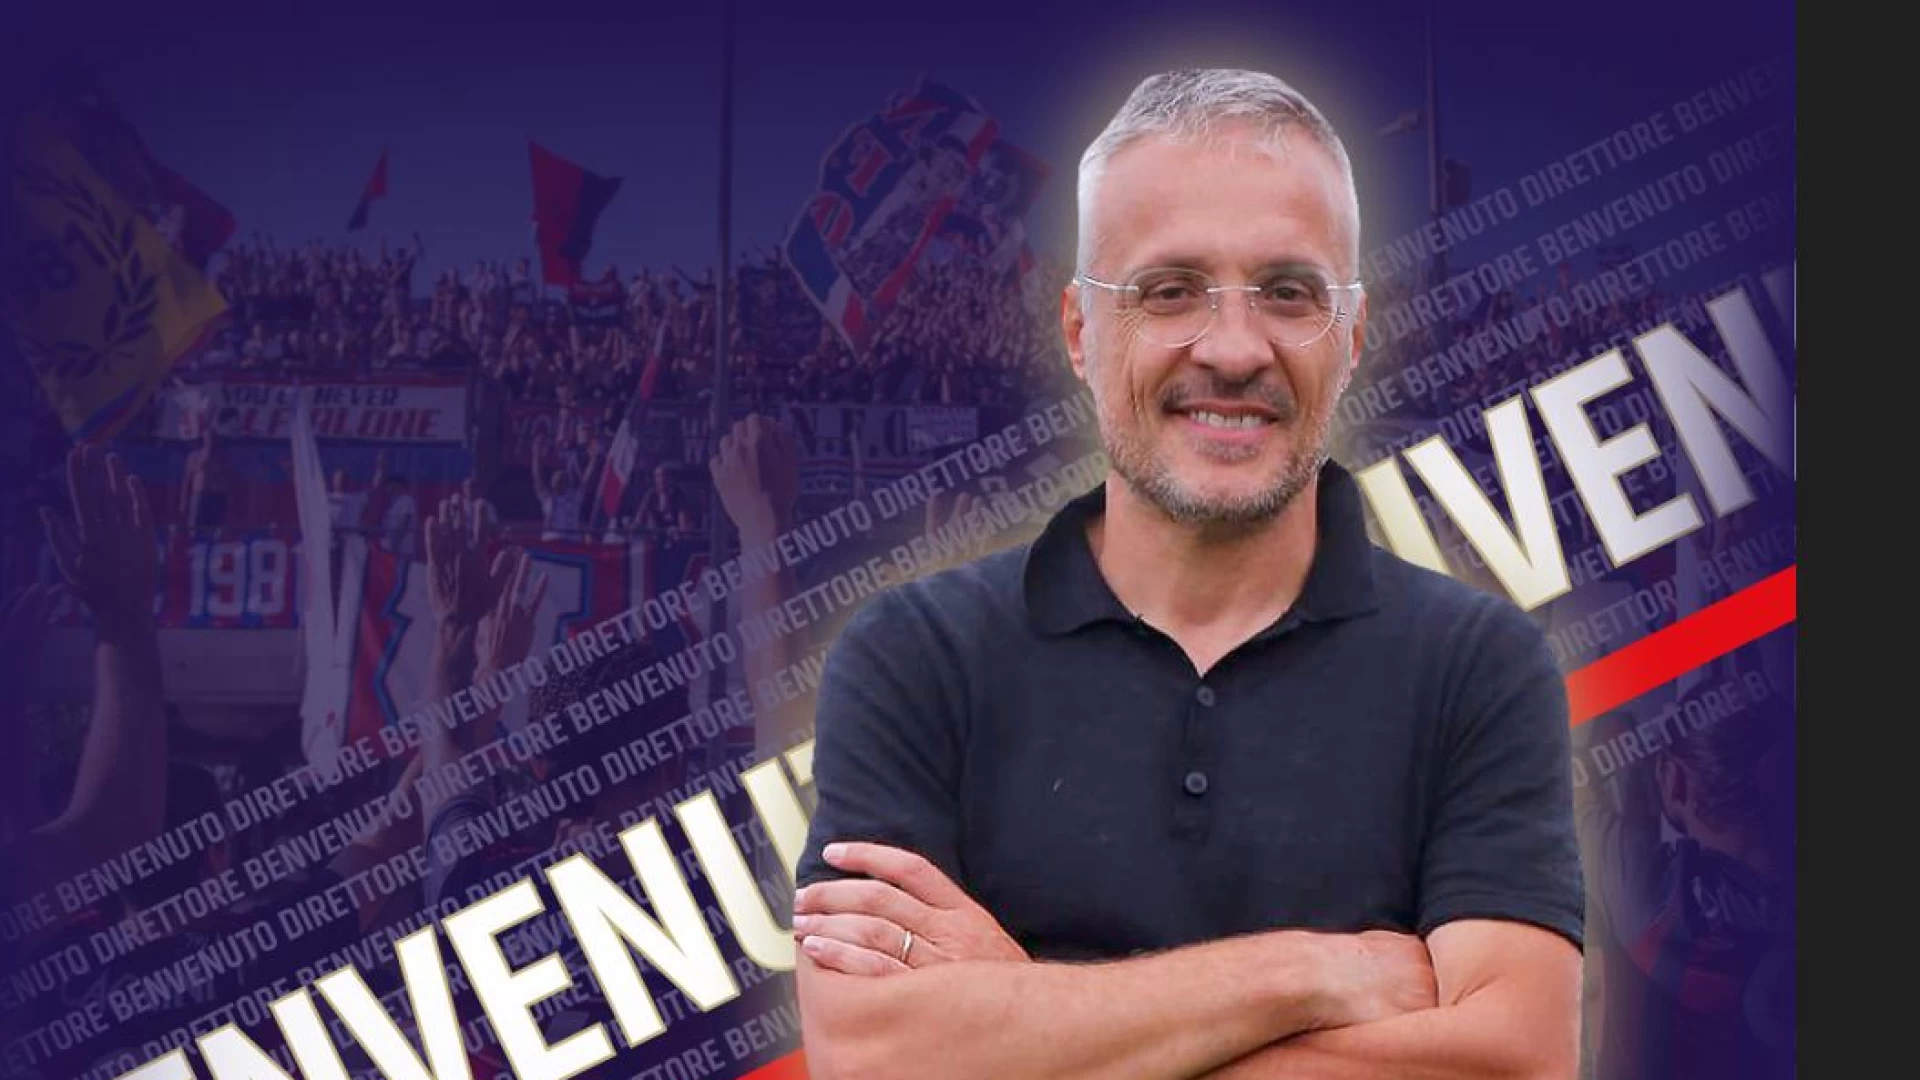 Sergio Filipponi e’ il nuovo direttore sportivo del Campobasso Football Club.